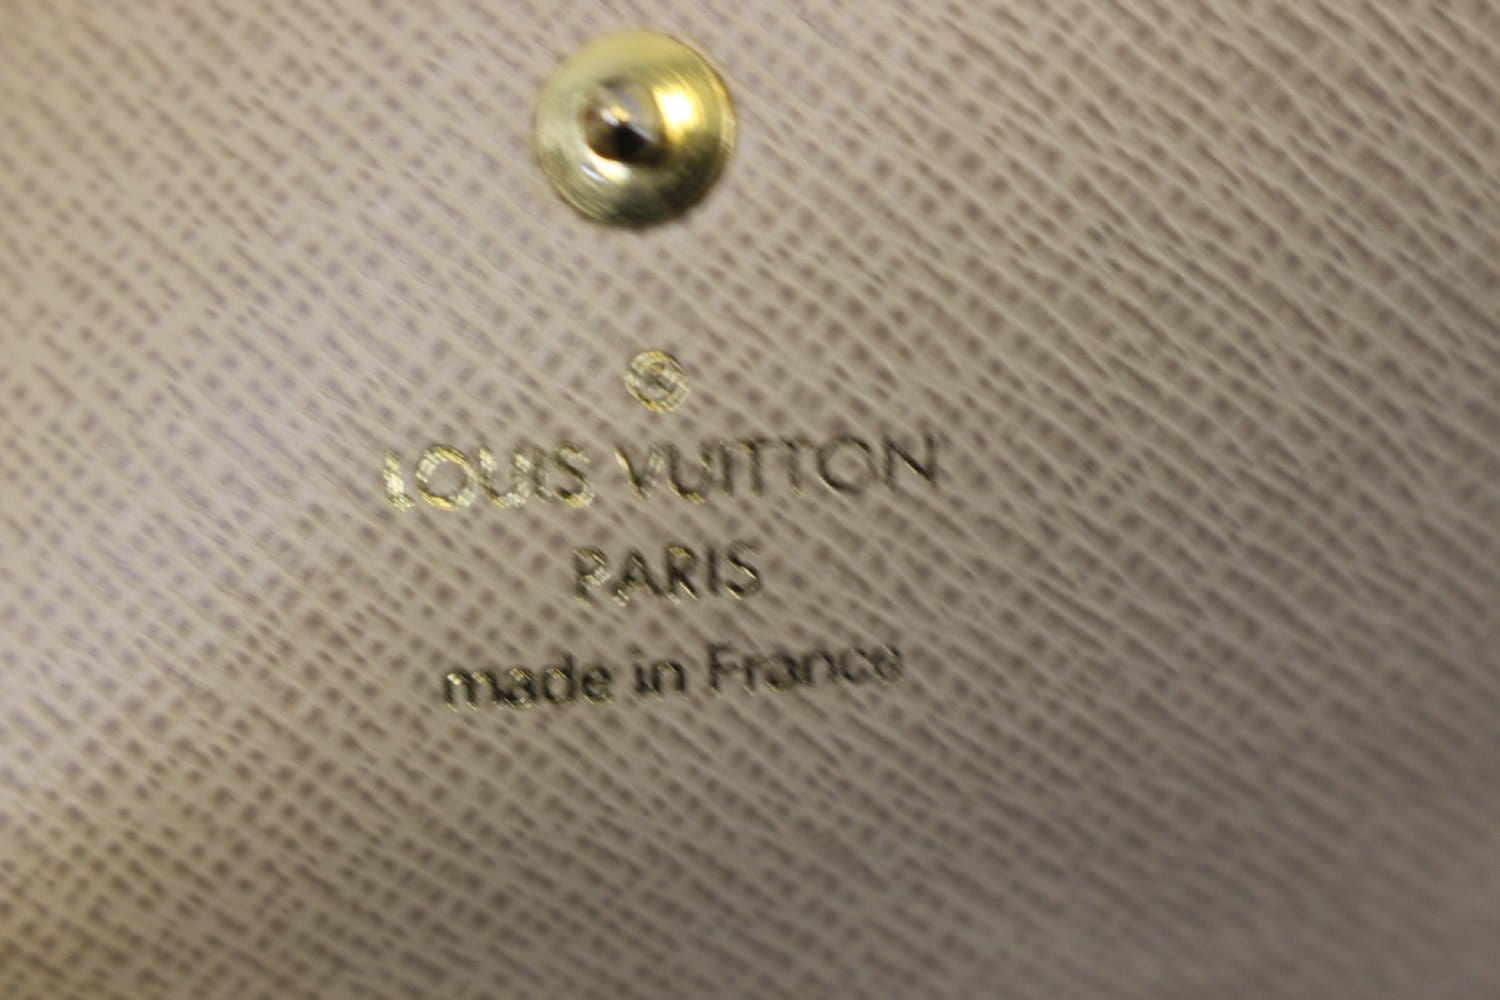 LOUIS VUITTON Gold Monogram Dentelle Trifold Wallet Limited - Sale